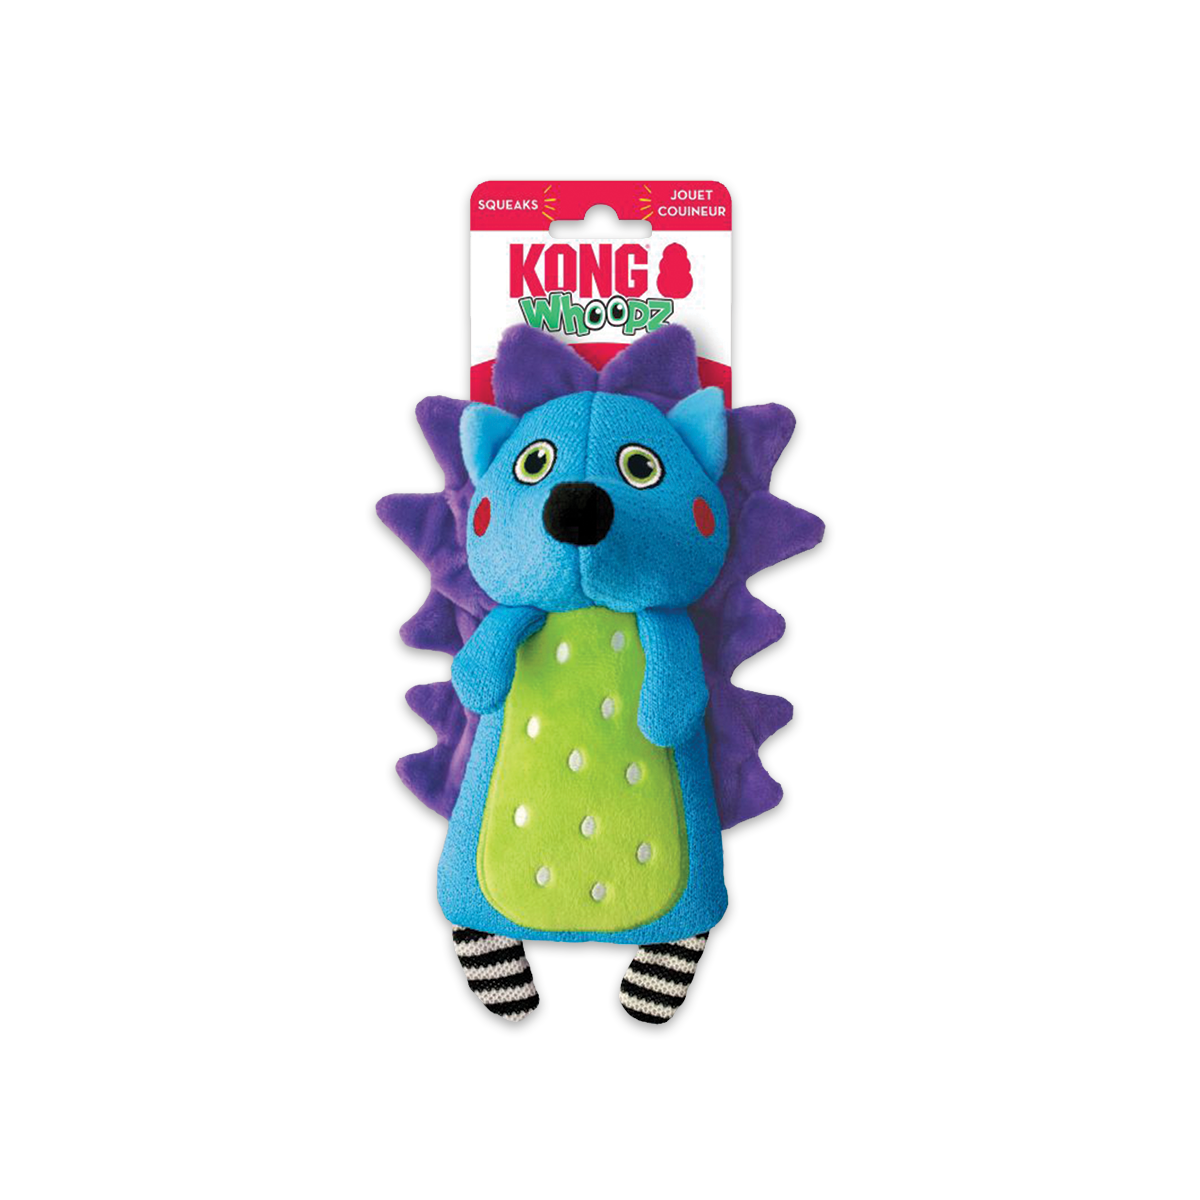 KONG Whoopz Hedgehog Size S คอง ของเล่นรูปตุ๊กตาเม่น ไซส์ S